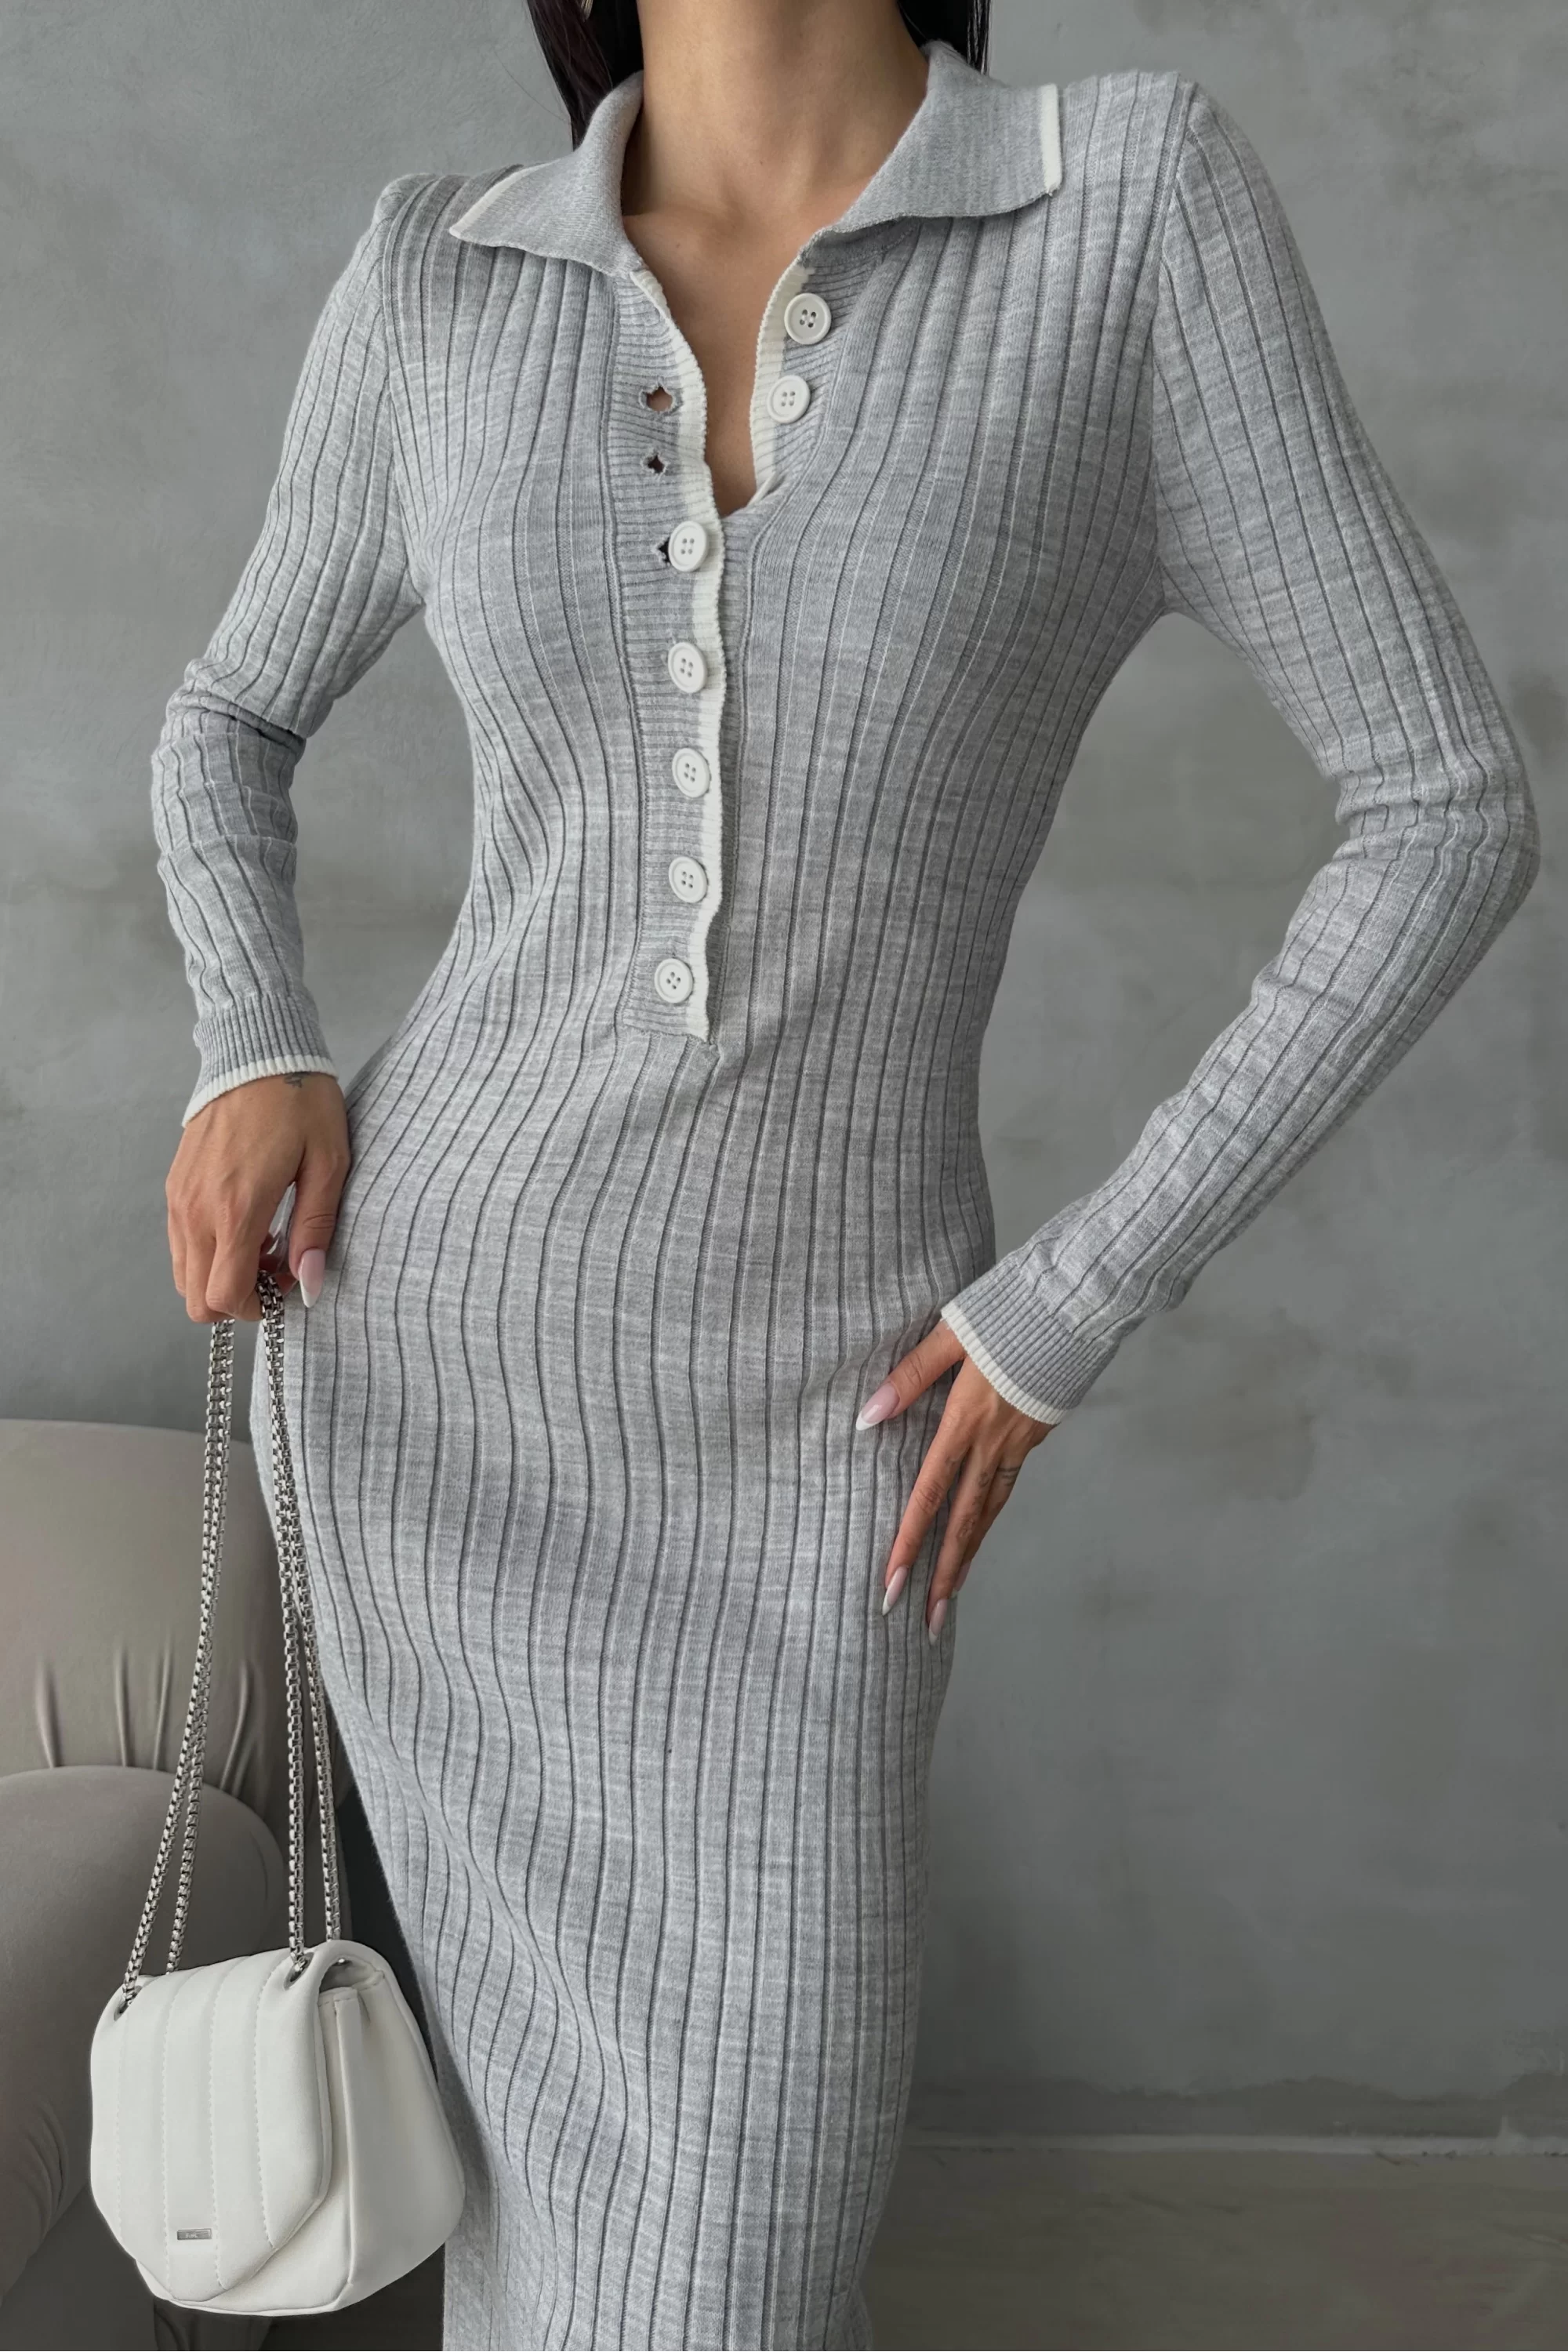 Kadın Gri Fitilli Düğmeli Uzun Elbise 1007-6023